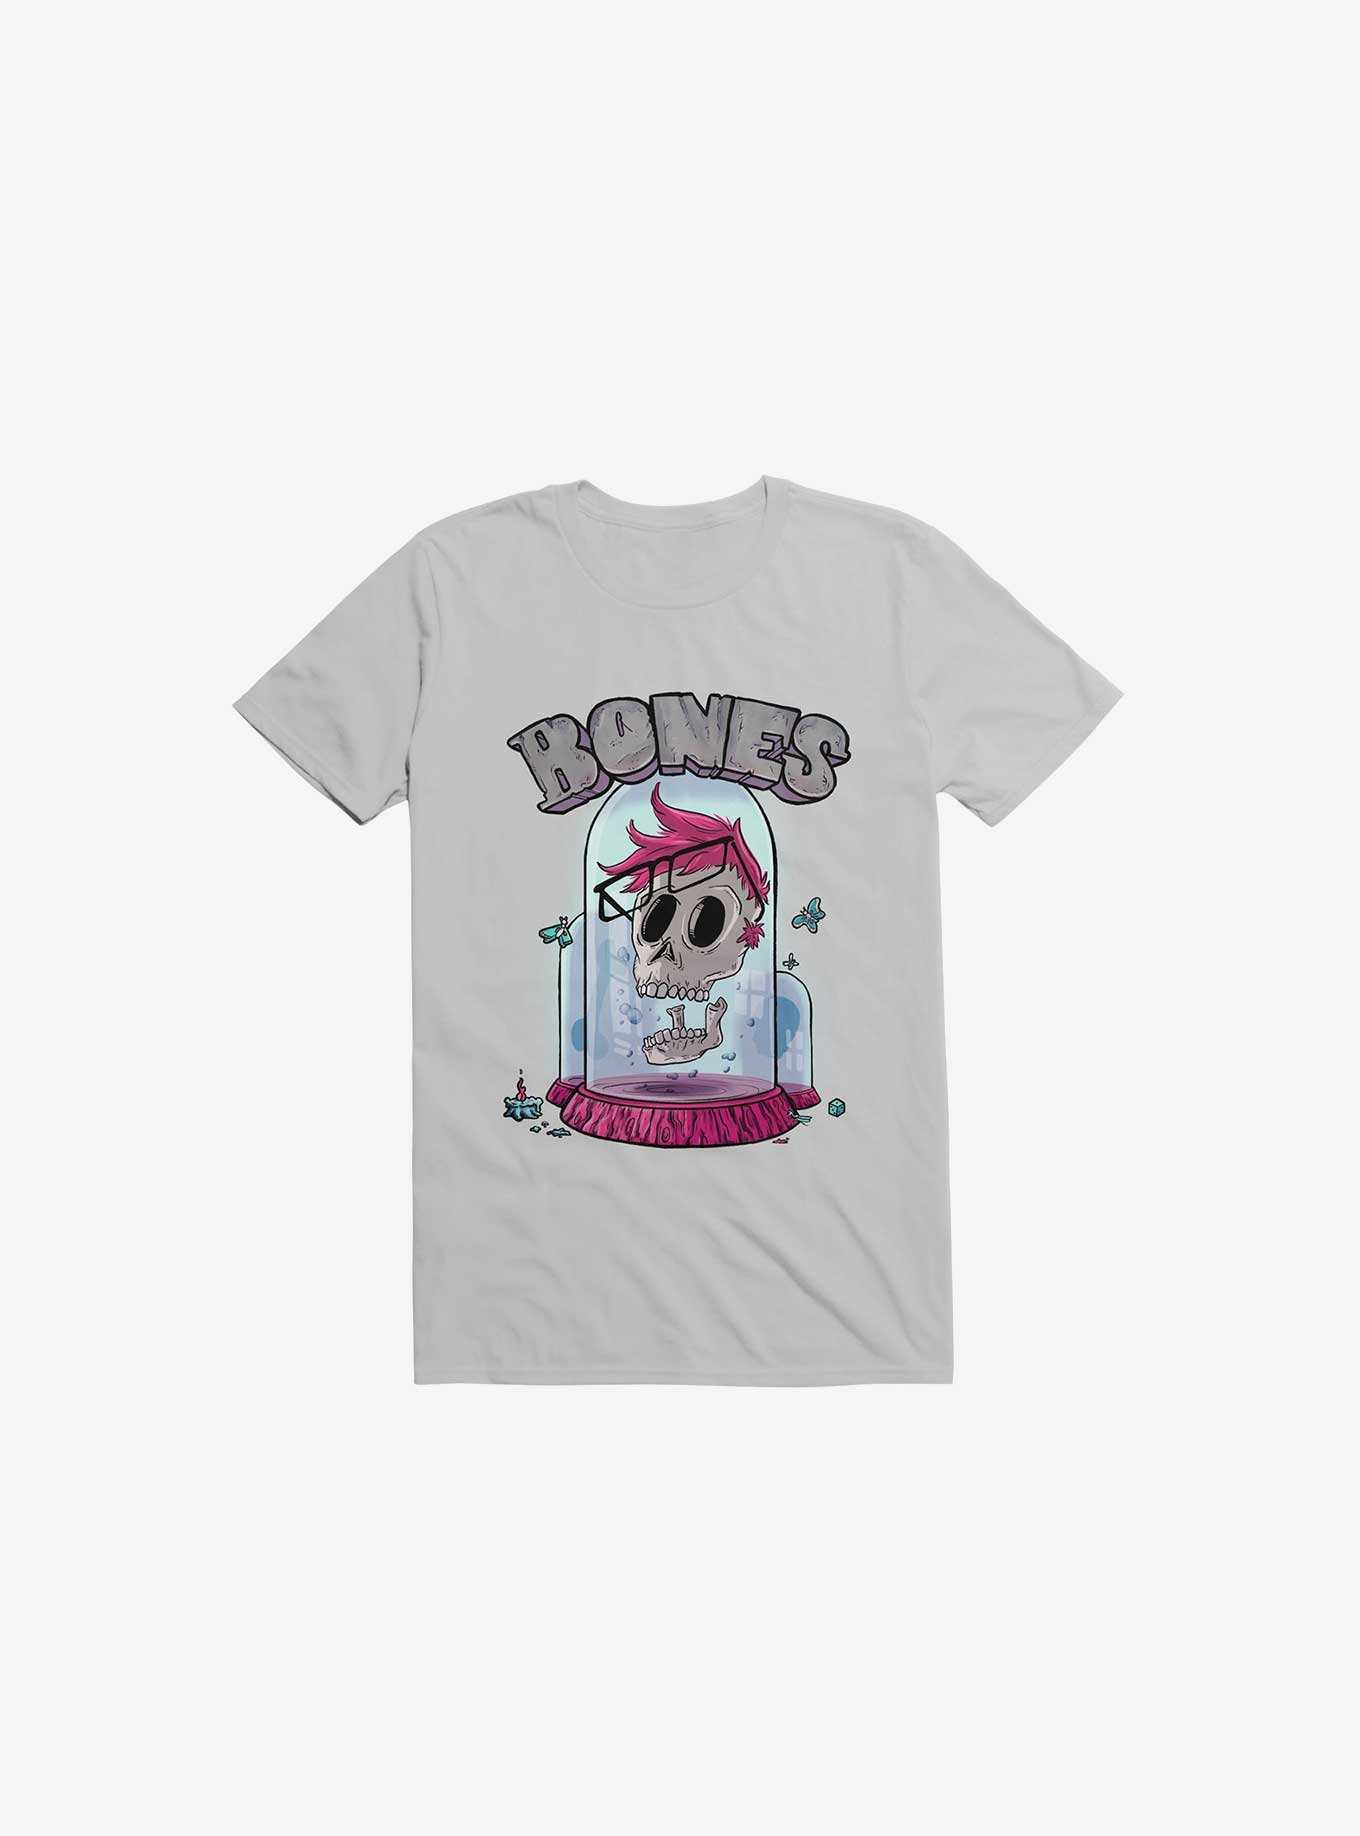 Nerd Bones T-Shirt, , hi-res